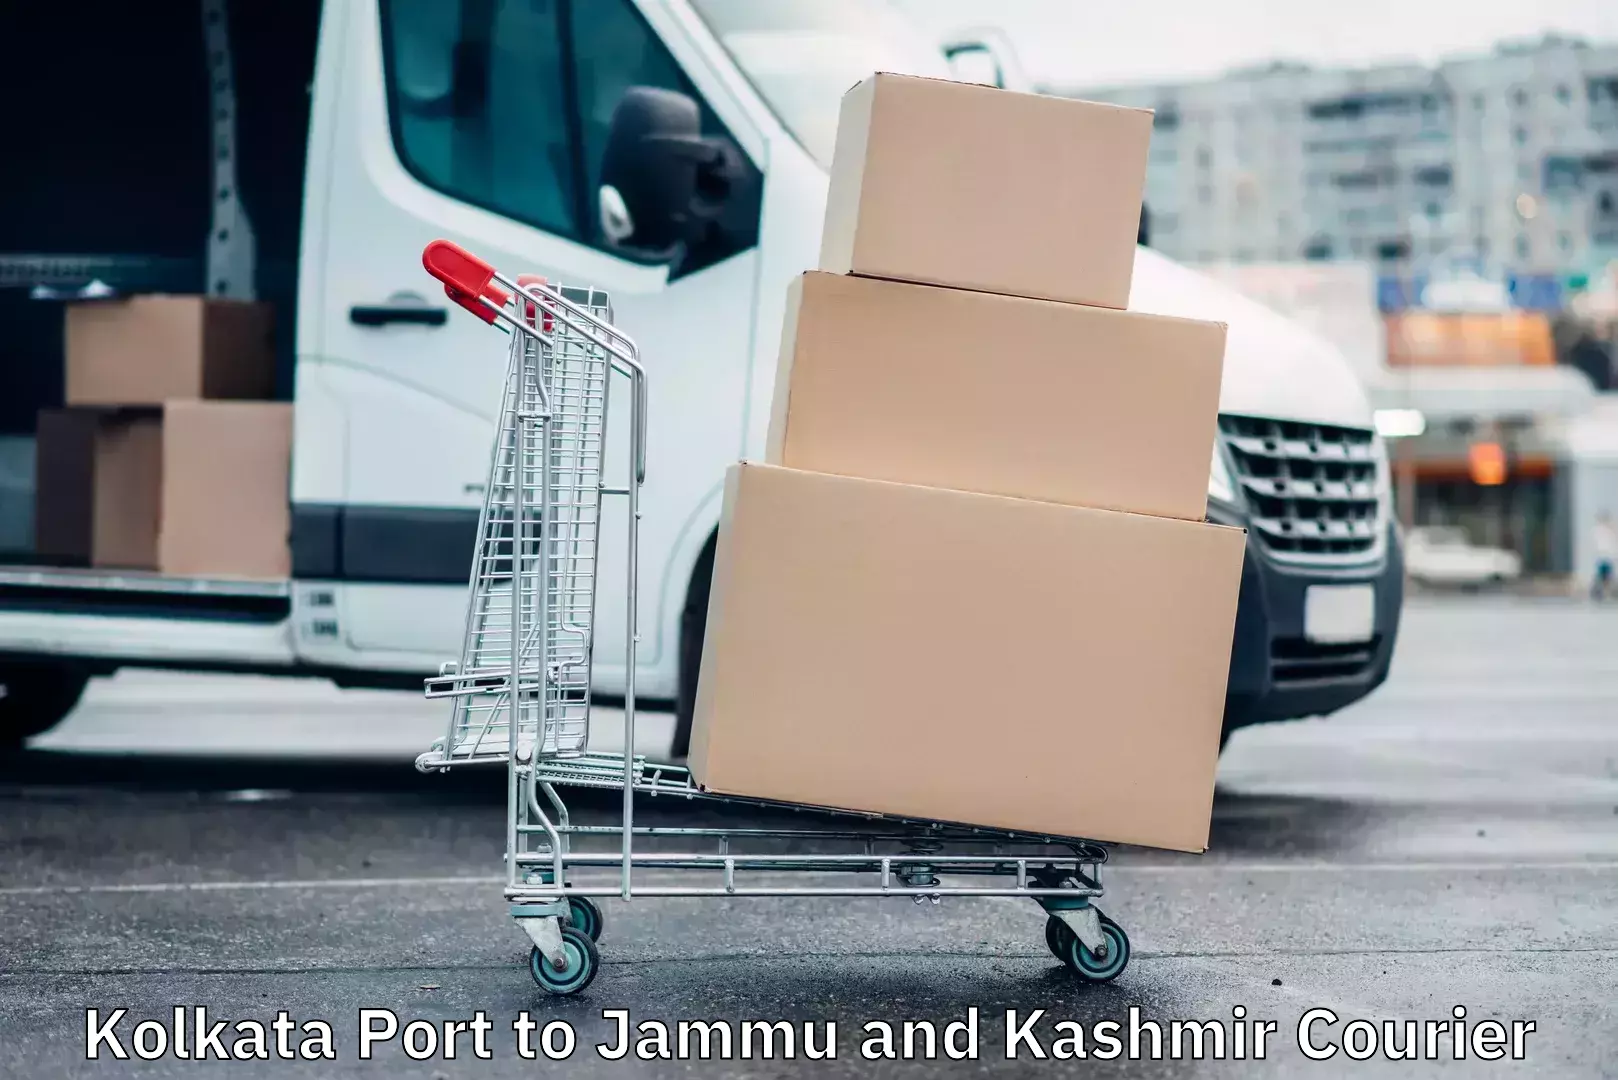 Door-to-door shipment in Kolkata Port to Jammu and Kashmir